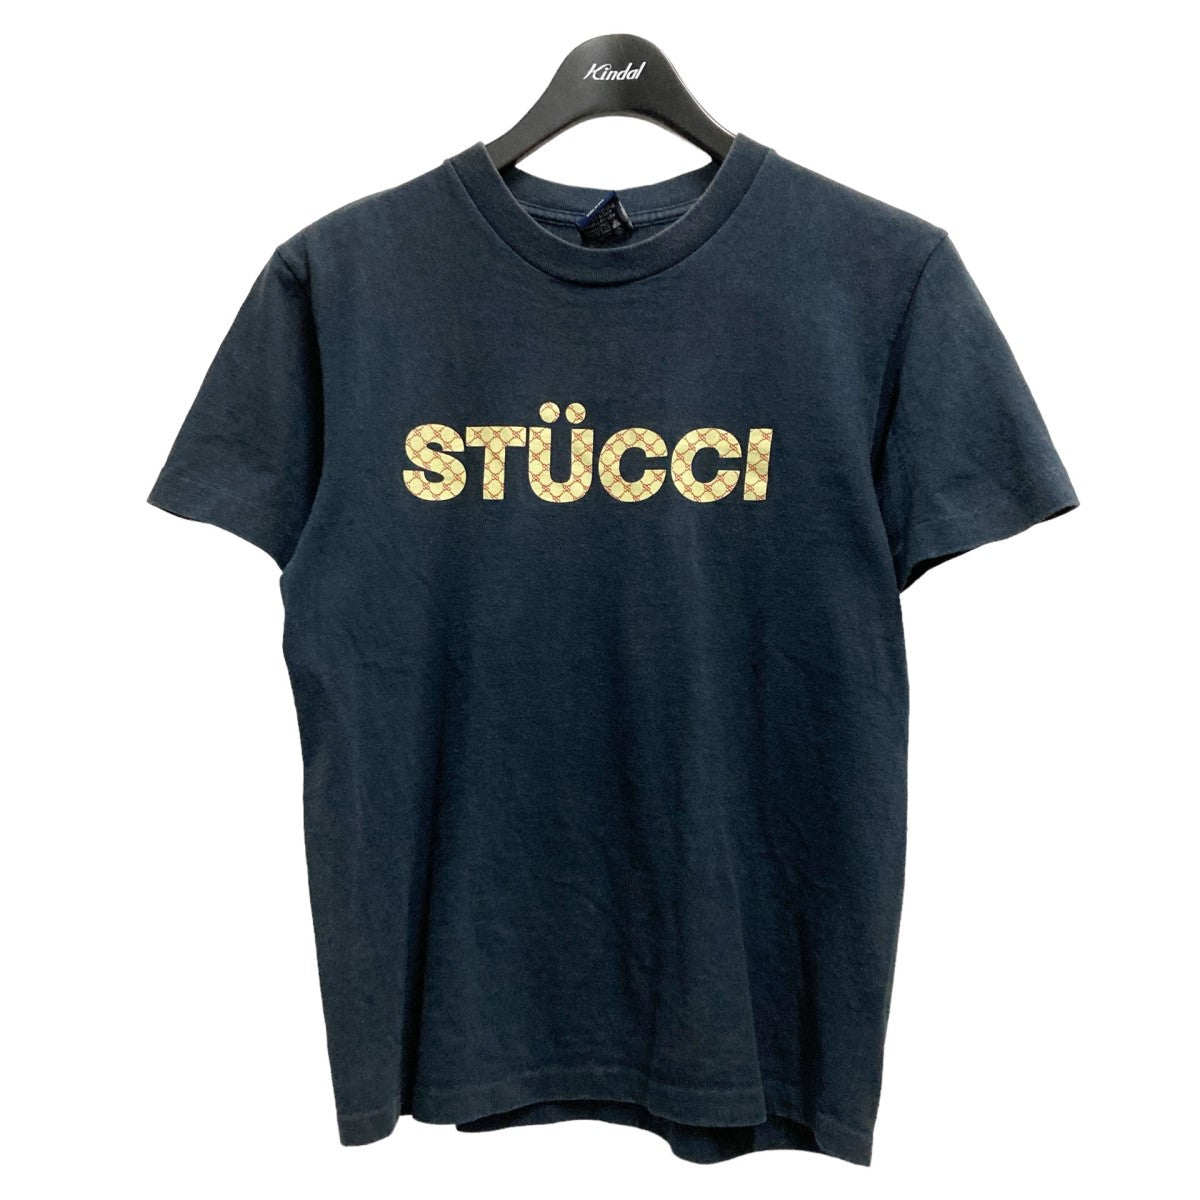 Stussy(ステューシー) STUCCI プリントTシャツ 90's ネイビー サイズ 